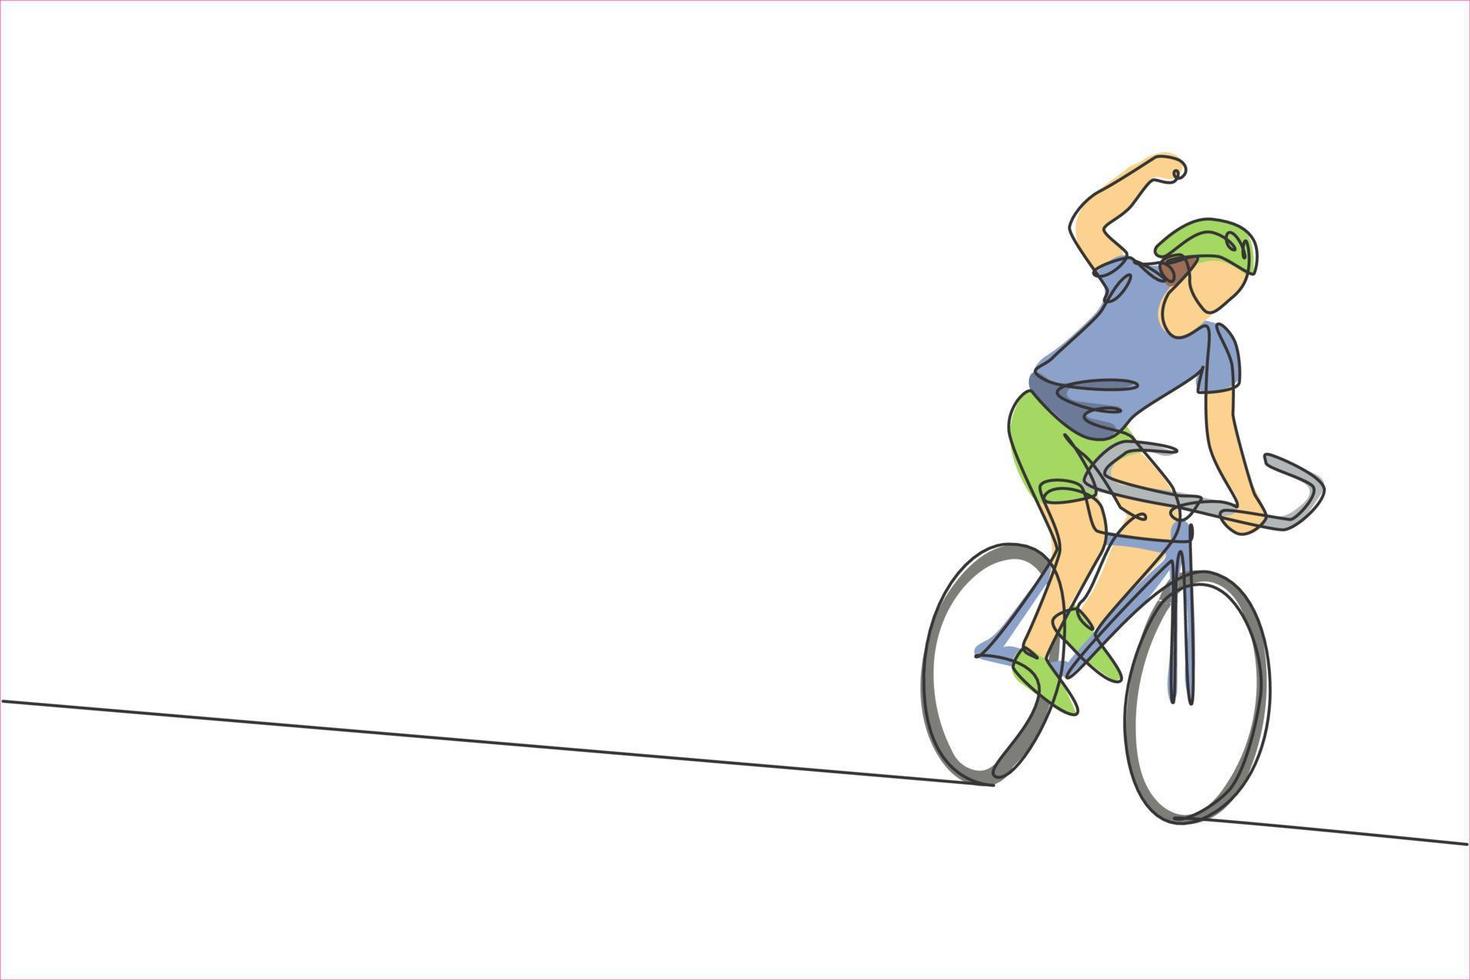 enda kontinuerlig linjeteckning av ung smidig man cyklist glad att nå mållinjen. sport livsstilskoncept. trendiga en rad rita design grafisk vektorillustration för cykling race marknadsföring media vektor